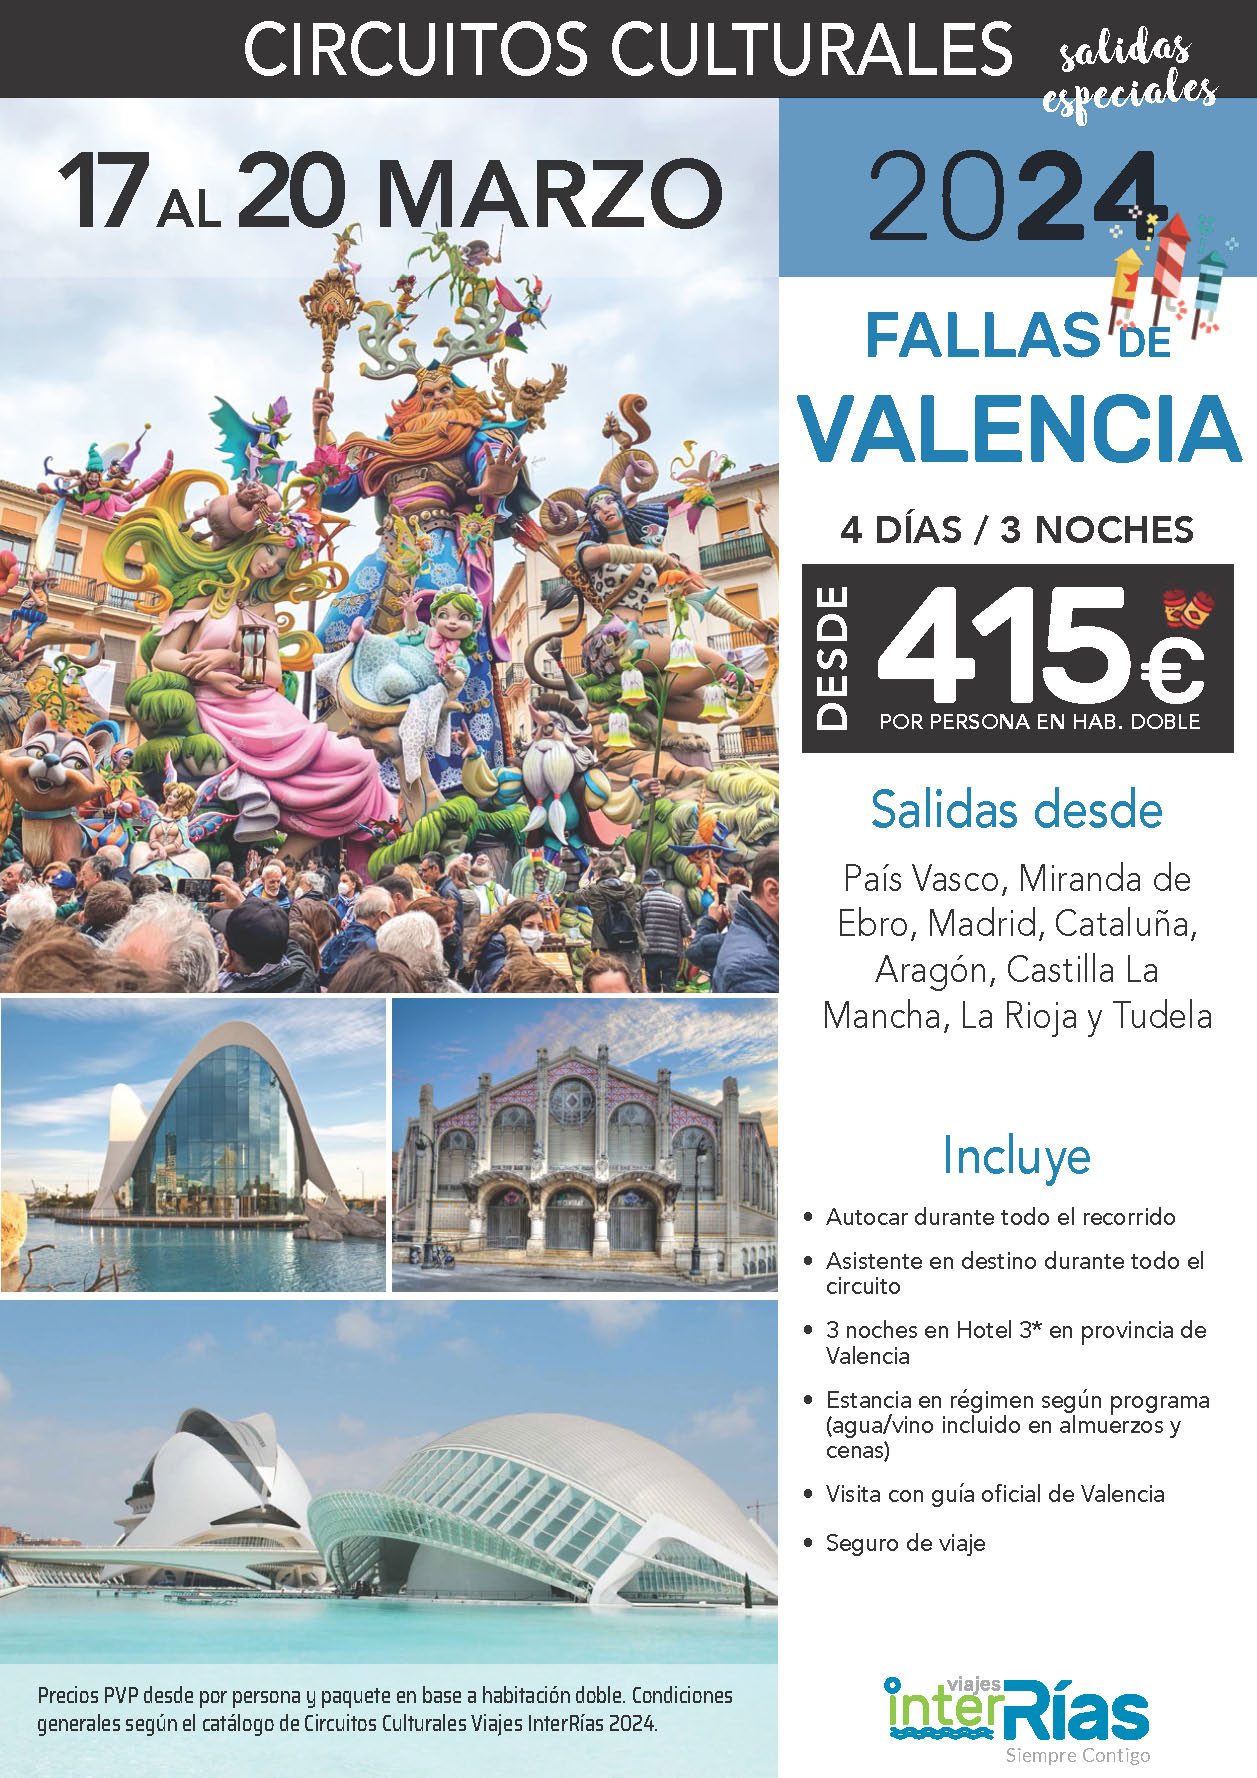 Oferta Interrias Fallas de Valencia 2024 circuito en autocar 4 dias salidas 17 marzo 2024 desde el Norte de España